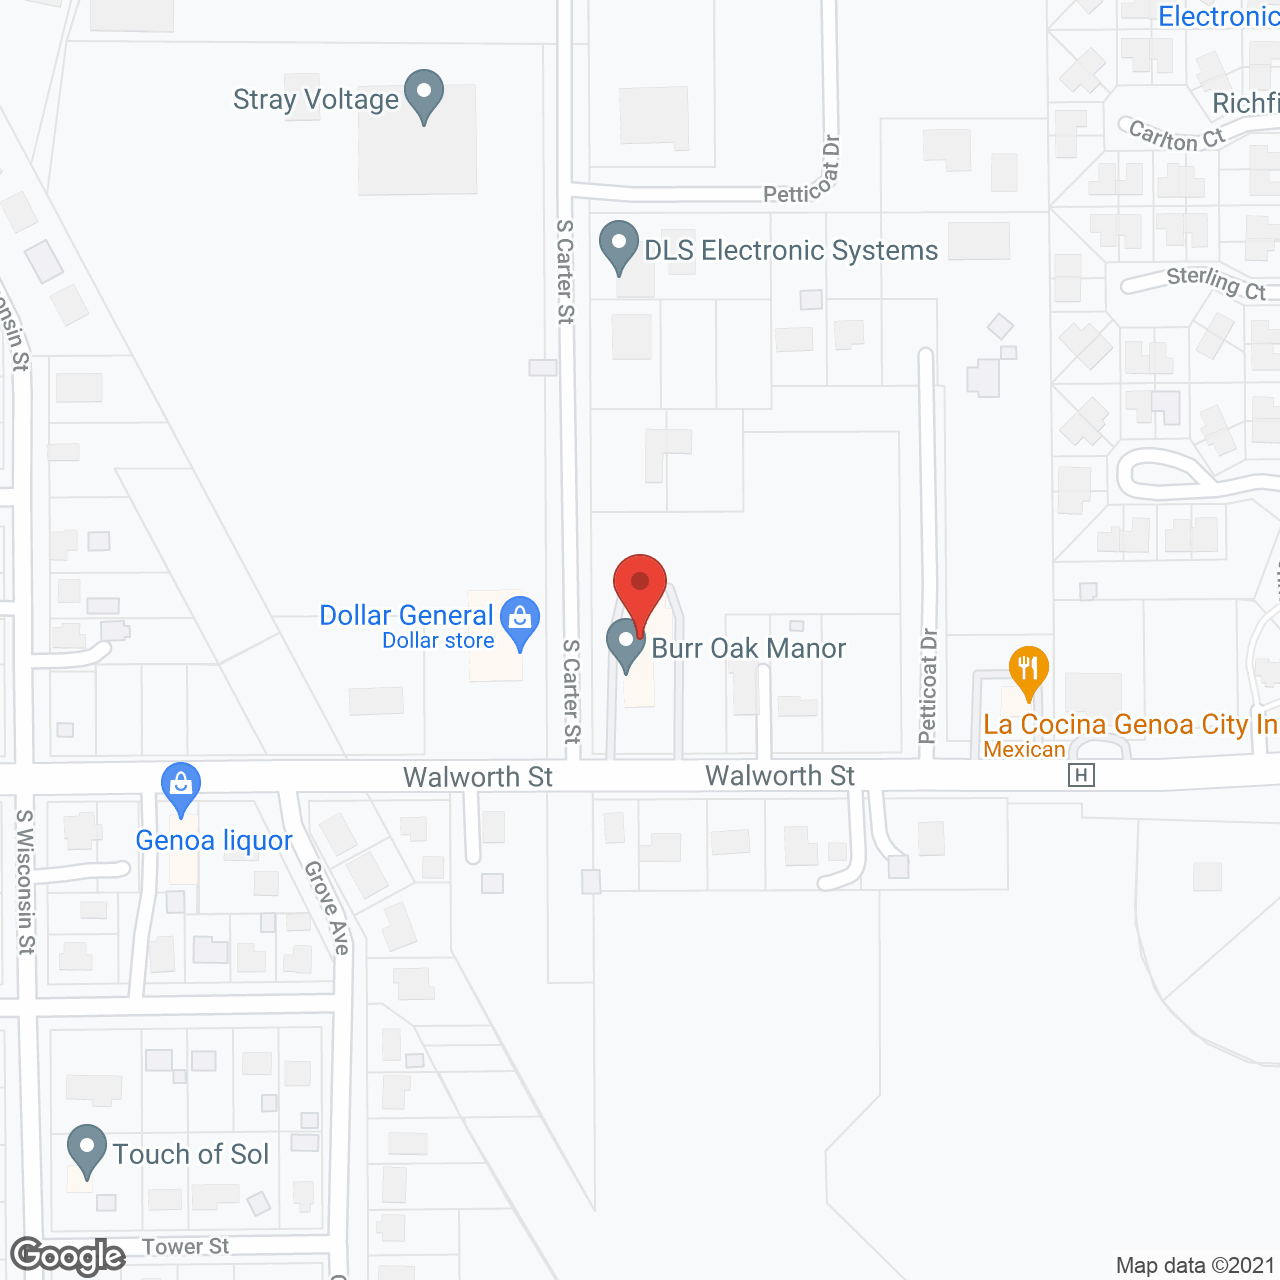 Burr Oak Manor in google map